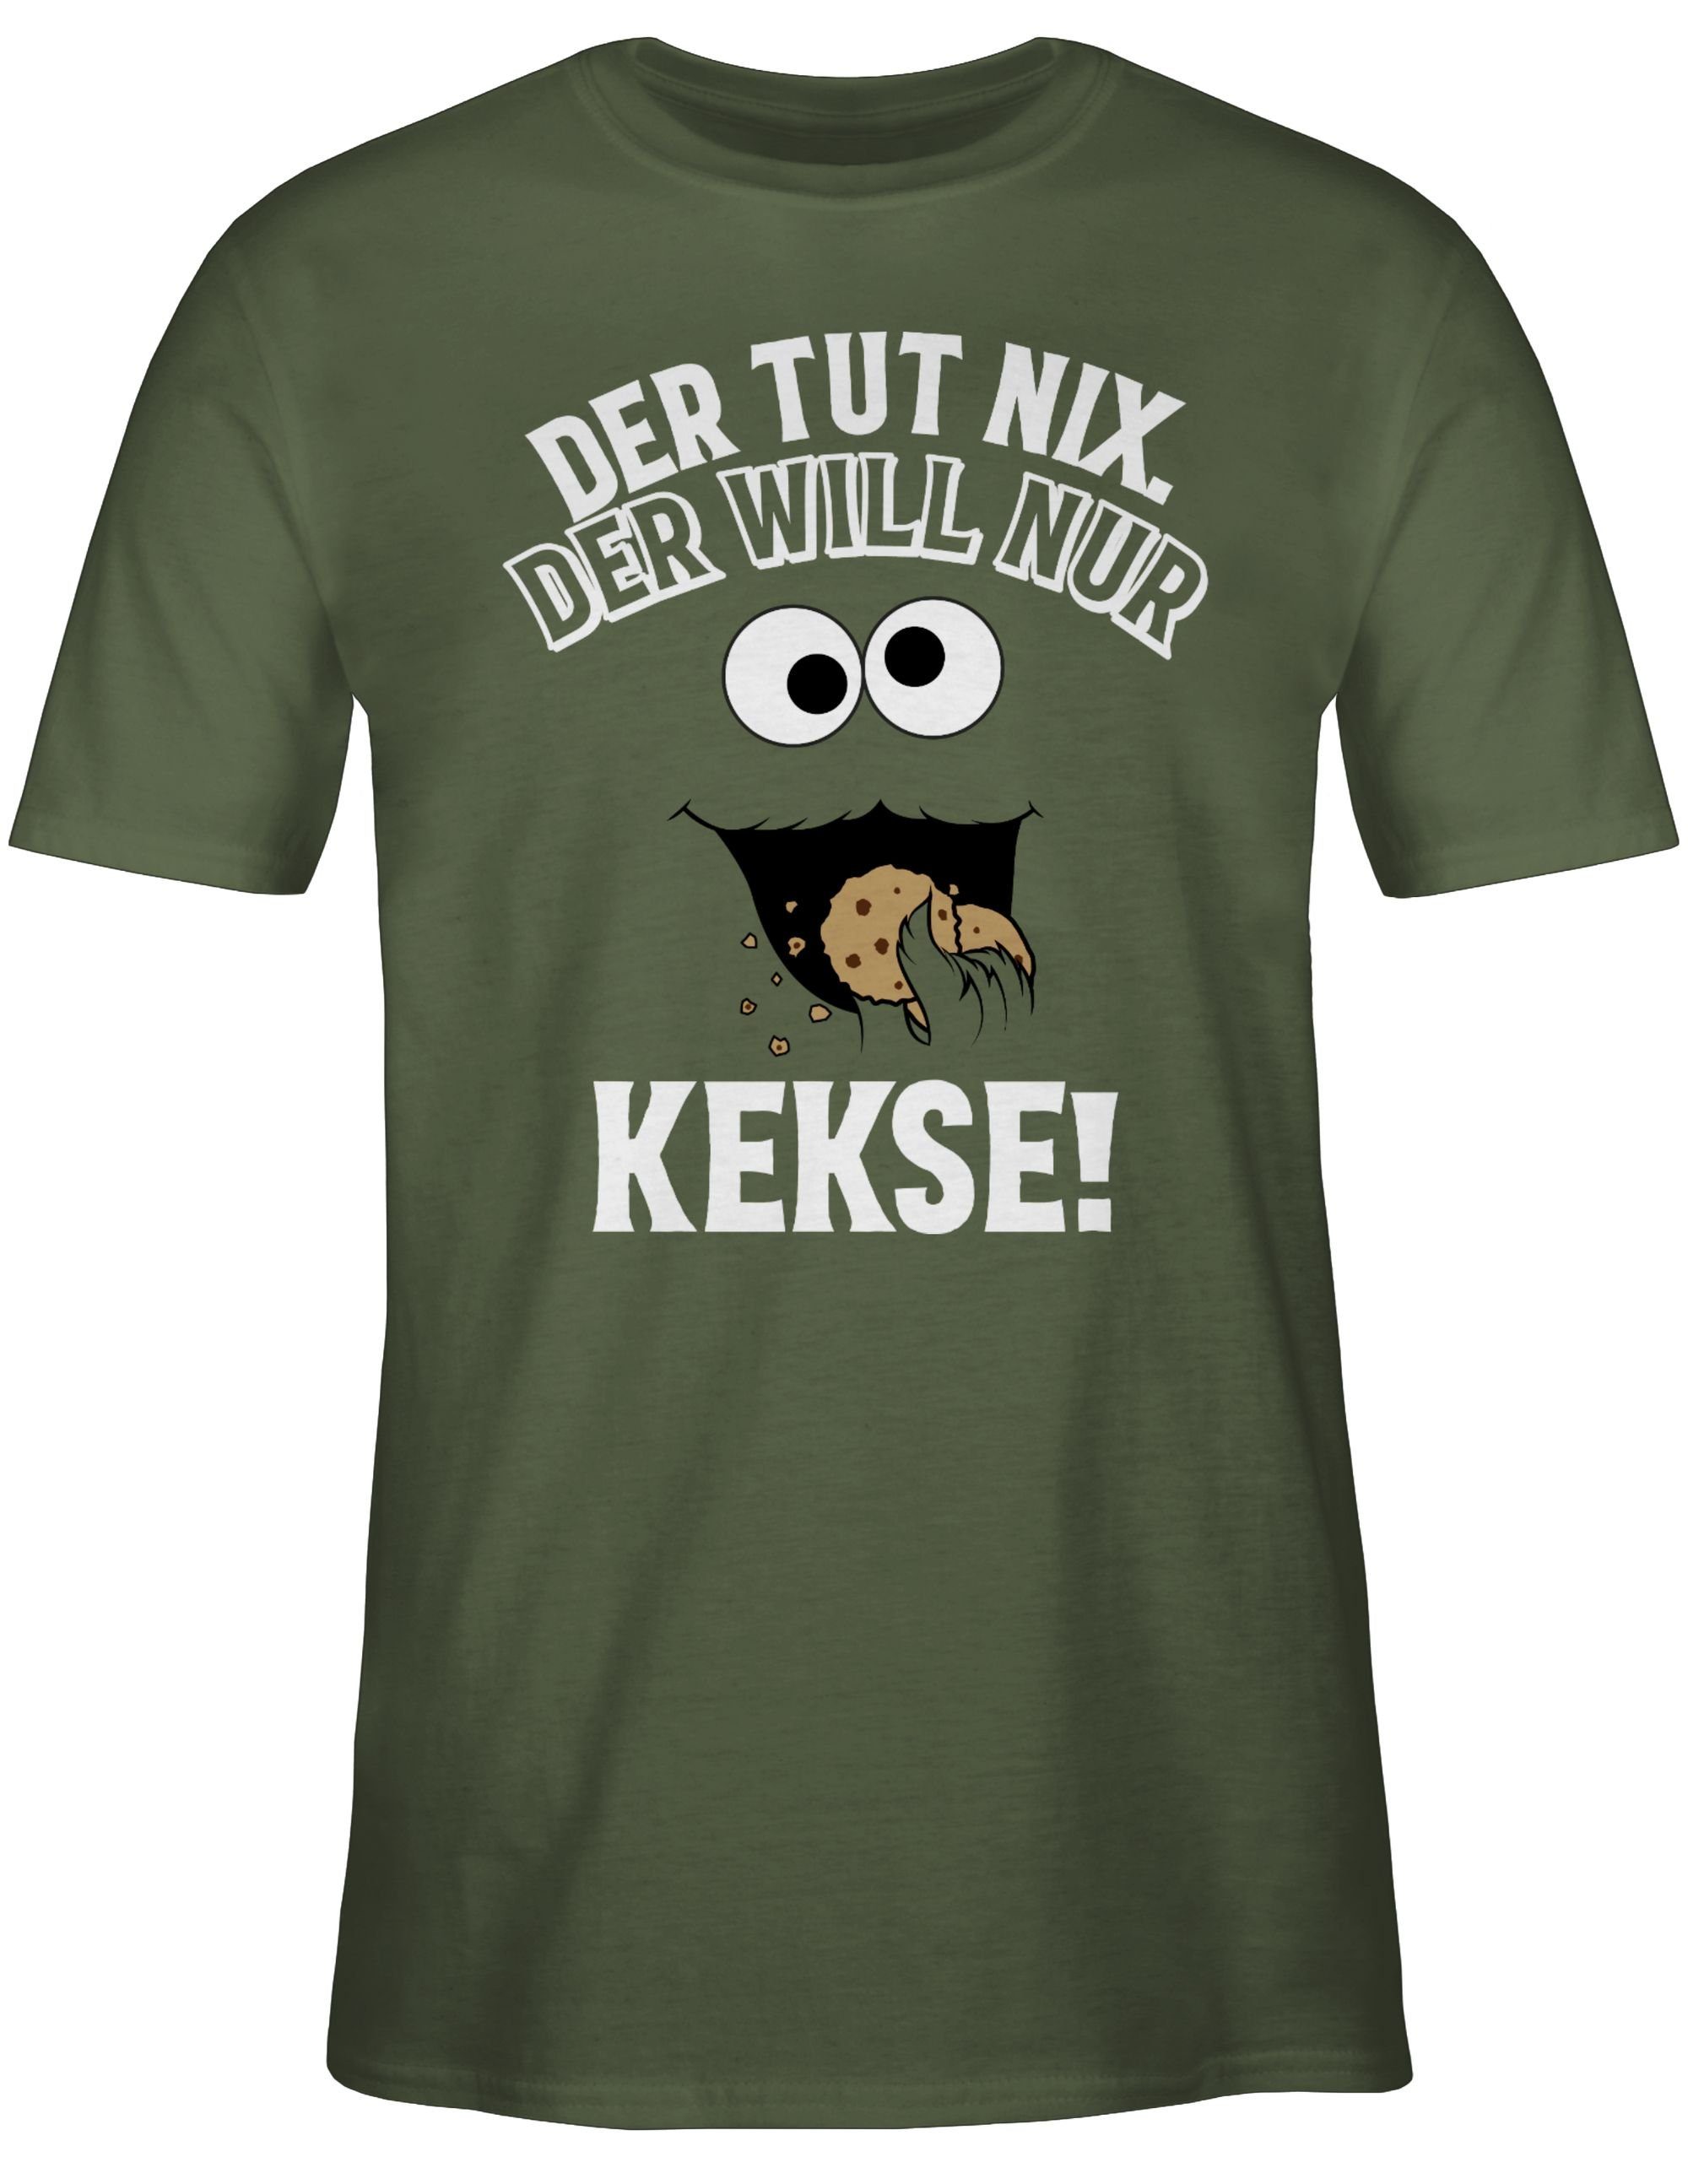 Kekse! Army nur T-Shirt Karneval - Outfit tut will Der Der Grün weiß/schwarz nix. 3 Shirtracer